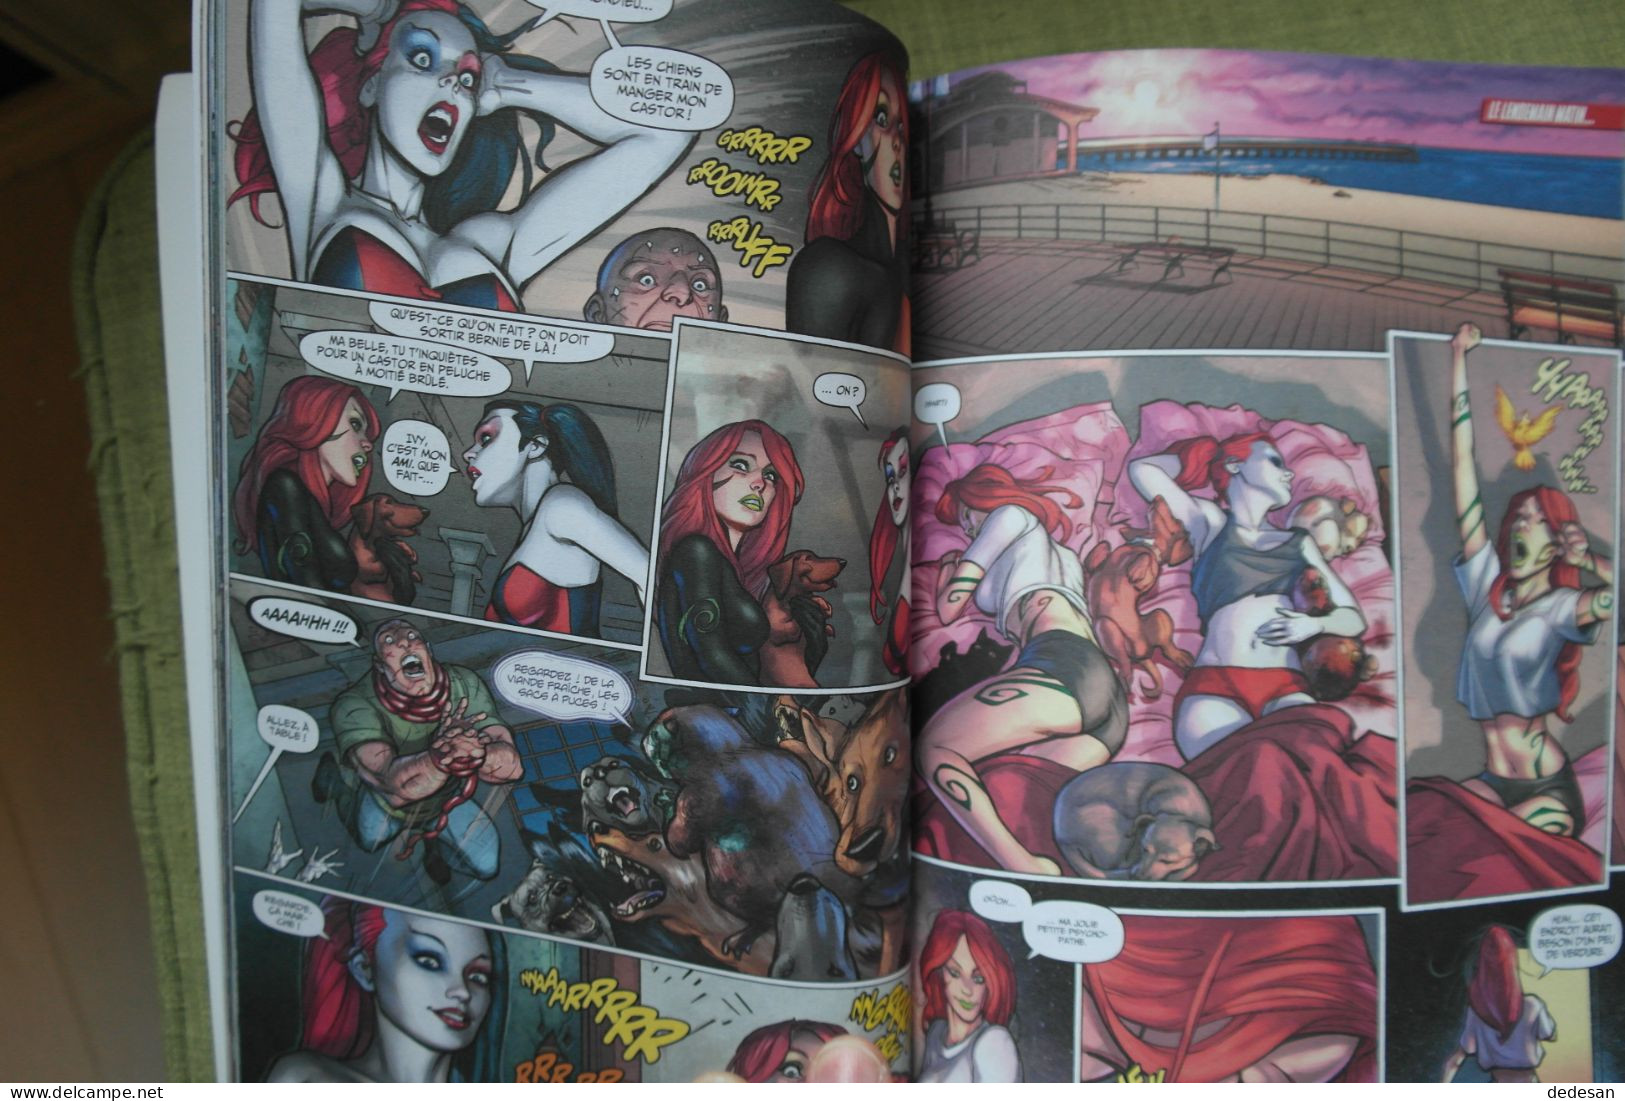 3 Bd Comics Harley Quinn Complètement Marteau, Injustice Année Un, Wonder Woman Année Un - Lotti E Stock Libri